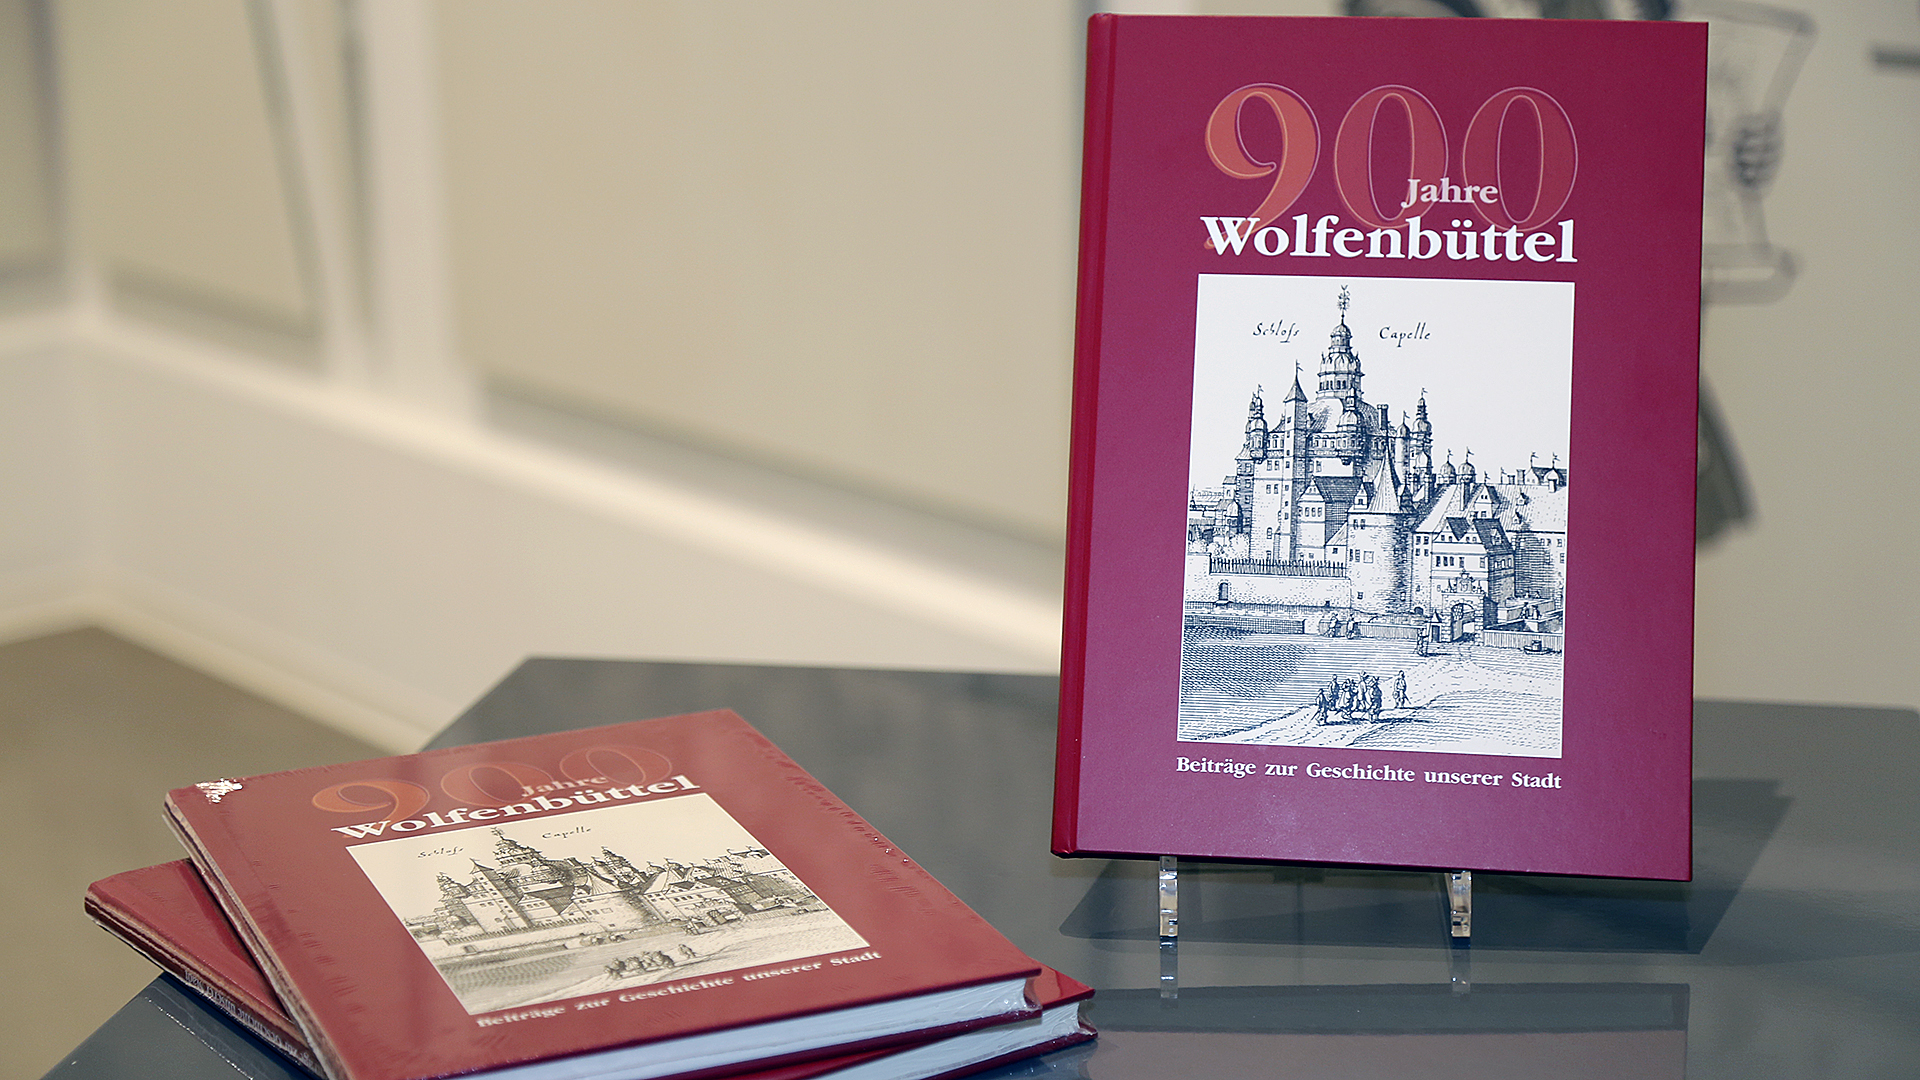 Drei Buchexemplare mit dem Titel "900 Jahre Wolfenbüttel". Während zwei Exemplare auf einem Beistelltisch liegen, steht eines auf einer Buchstütze daneben.